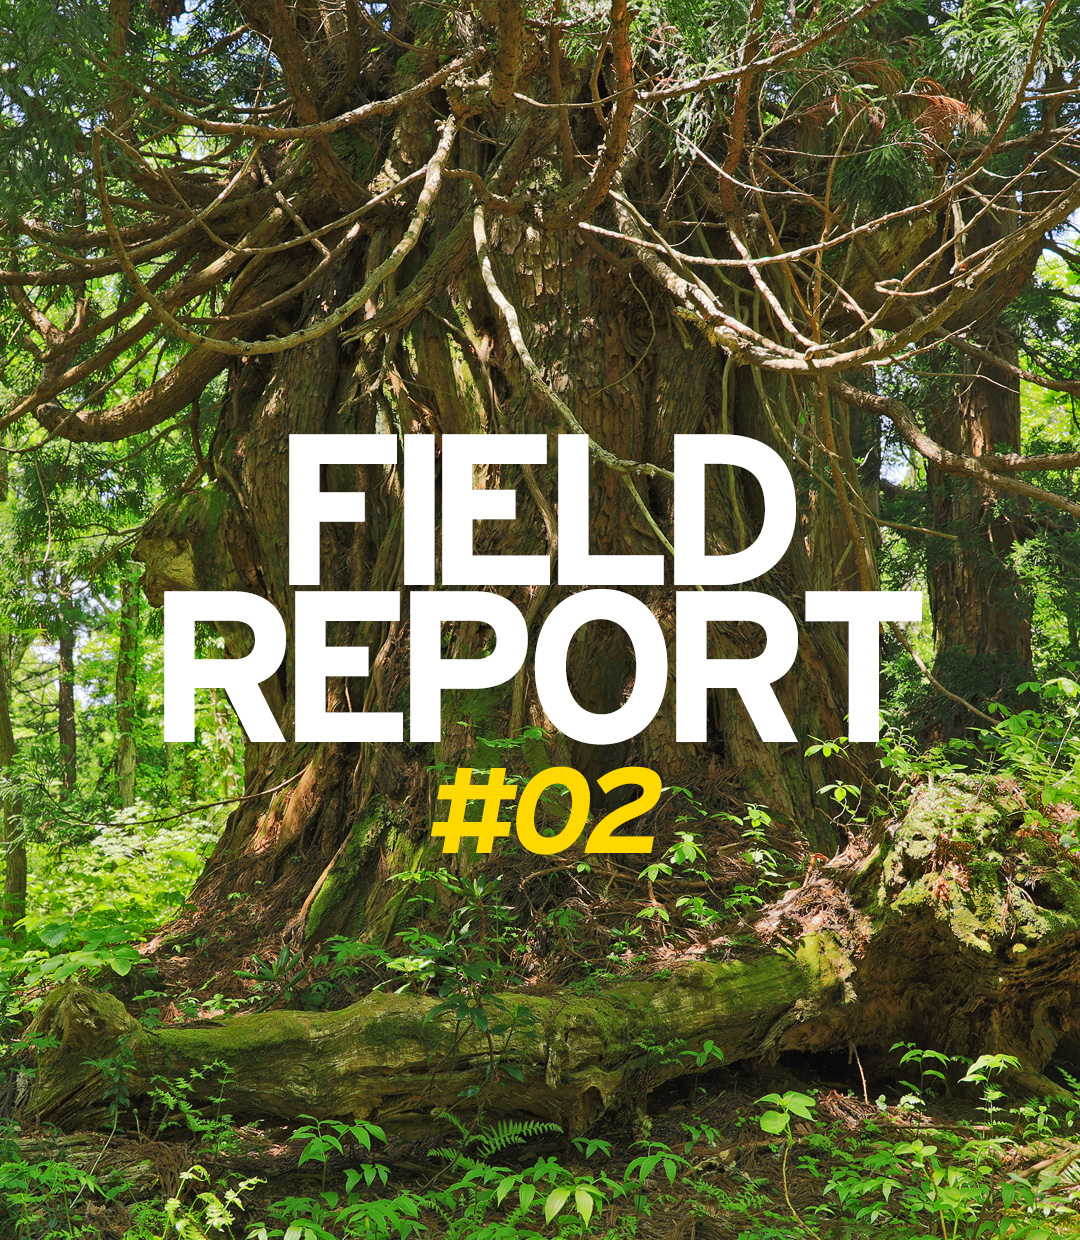 FIELD REPORT －金剛杉の息吹を感じる会－